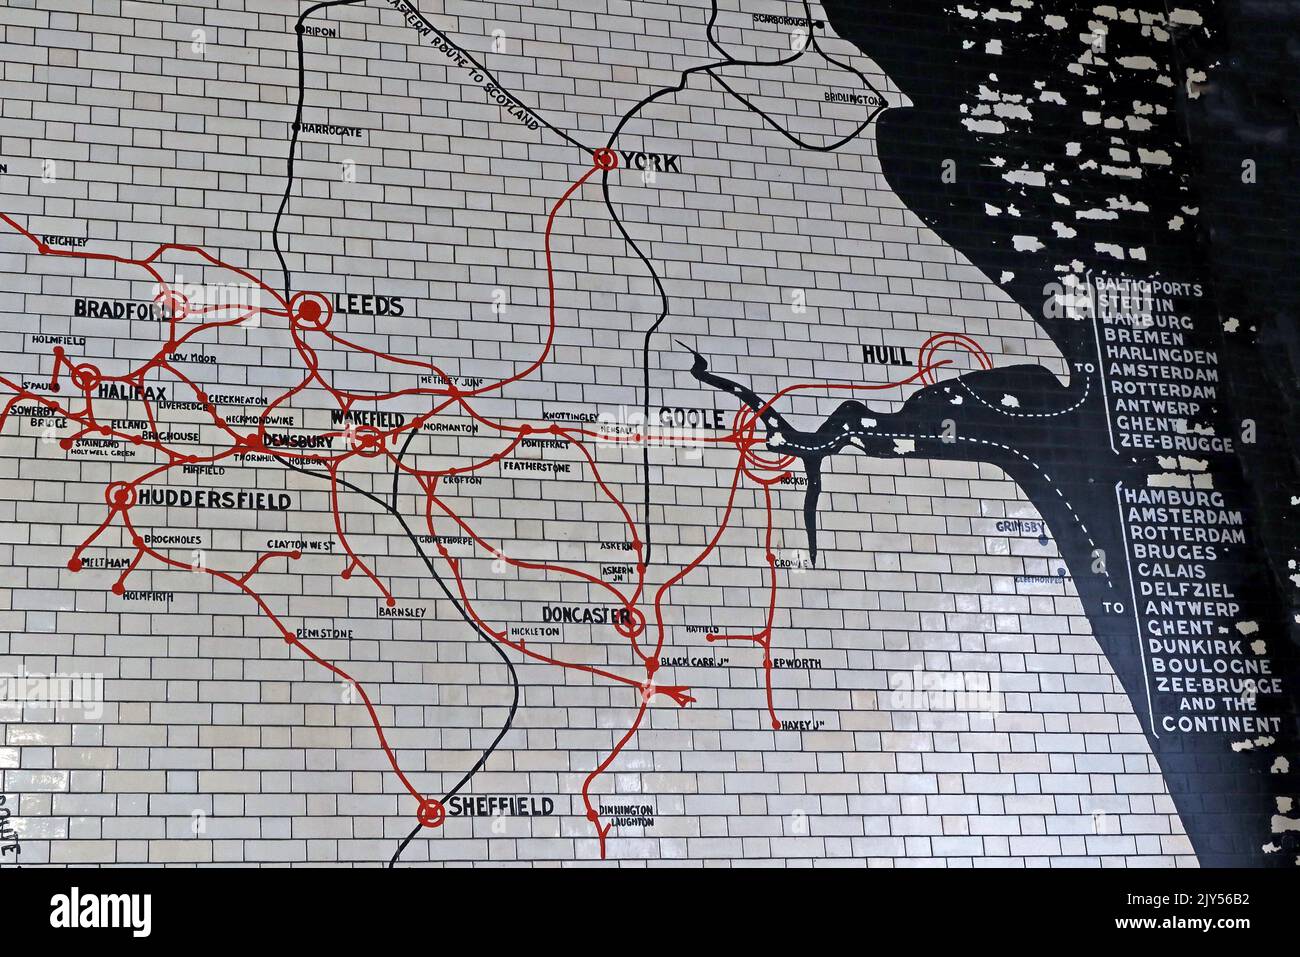 Alte Streckenkarte in Fliesen, Victoria Railway Station, Manchester, England, Großbritannien, m3 1WY Uhr - West Yorkshire, Bradford, Halifax, Huddersfield, Wakefield, Sheffield, Stockfoto